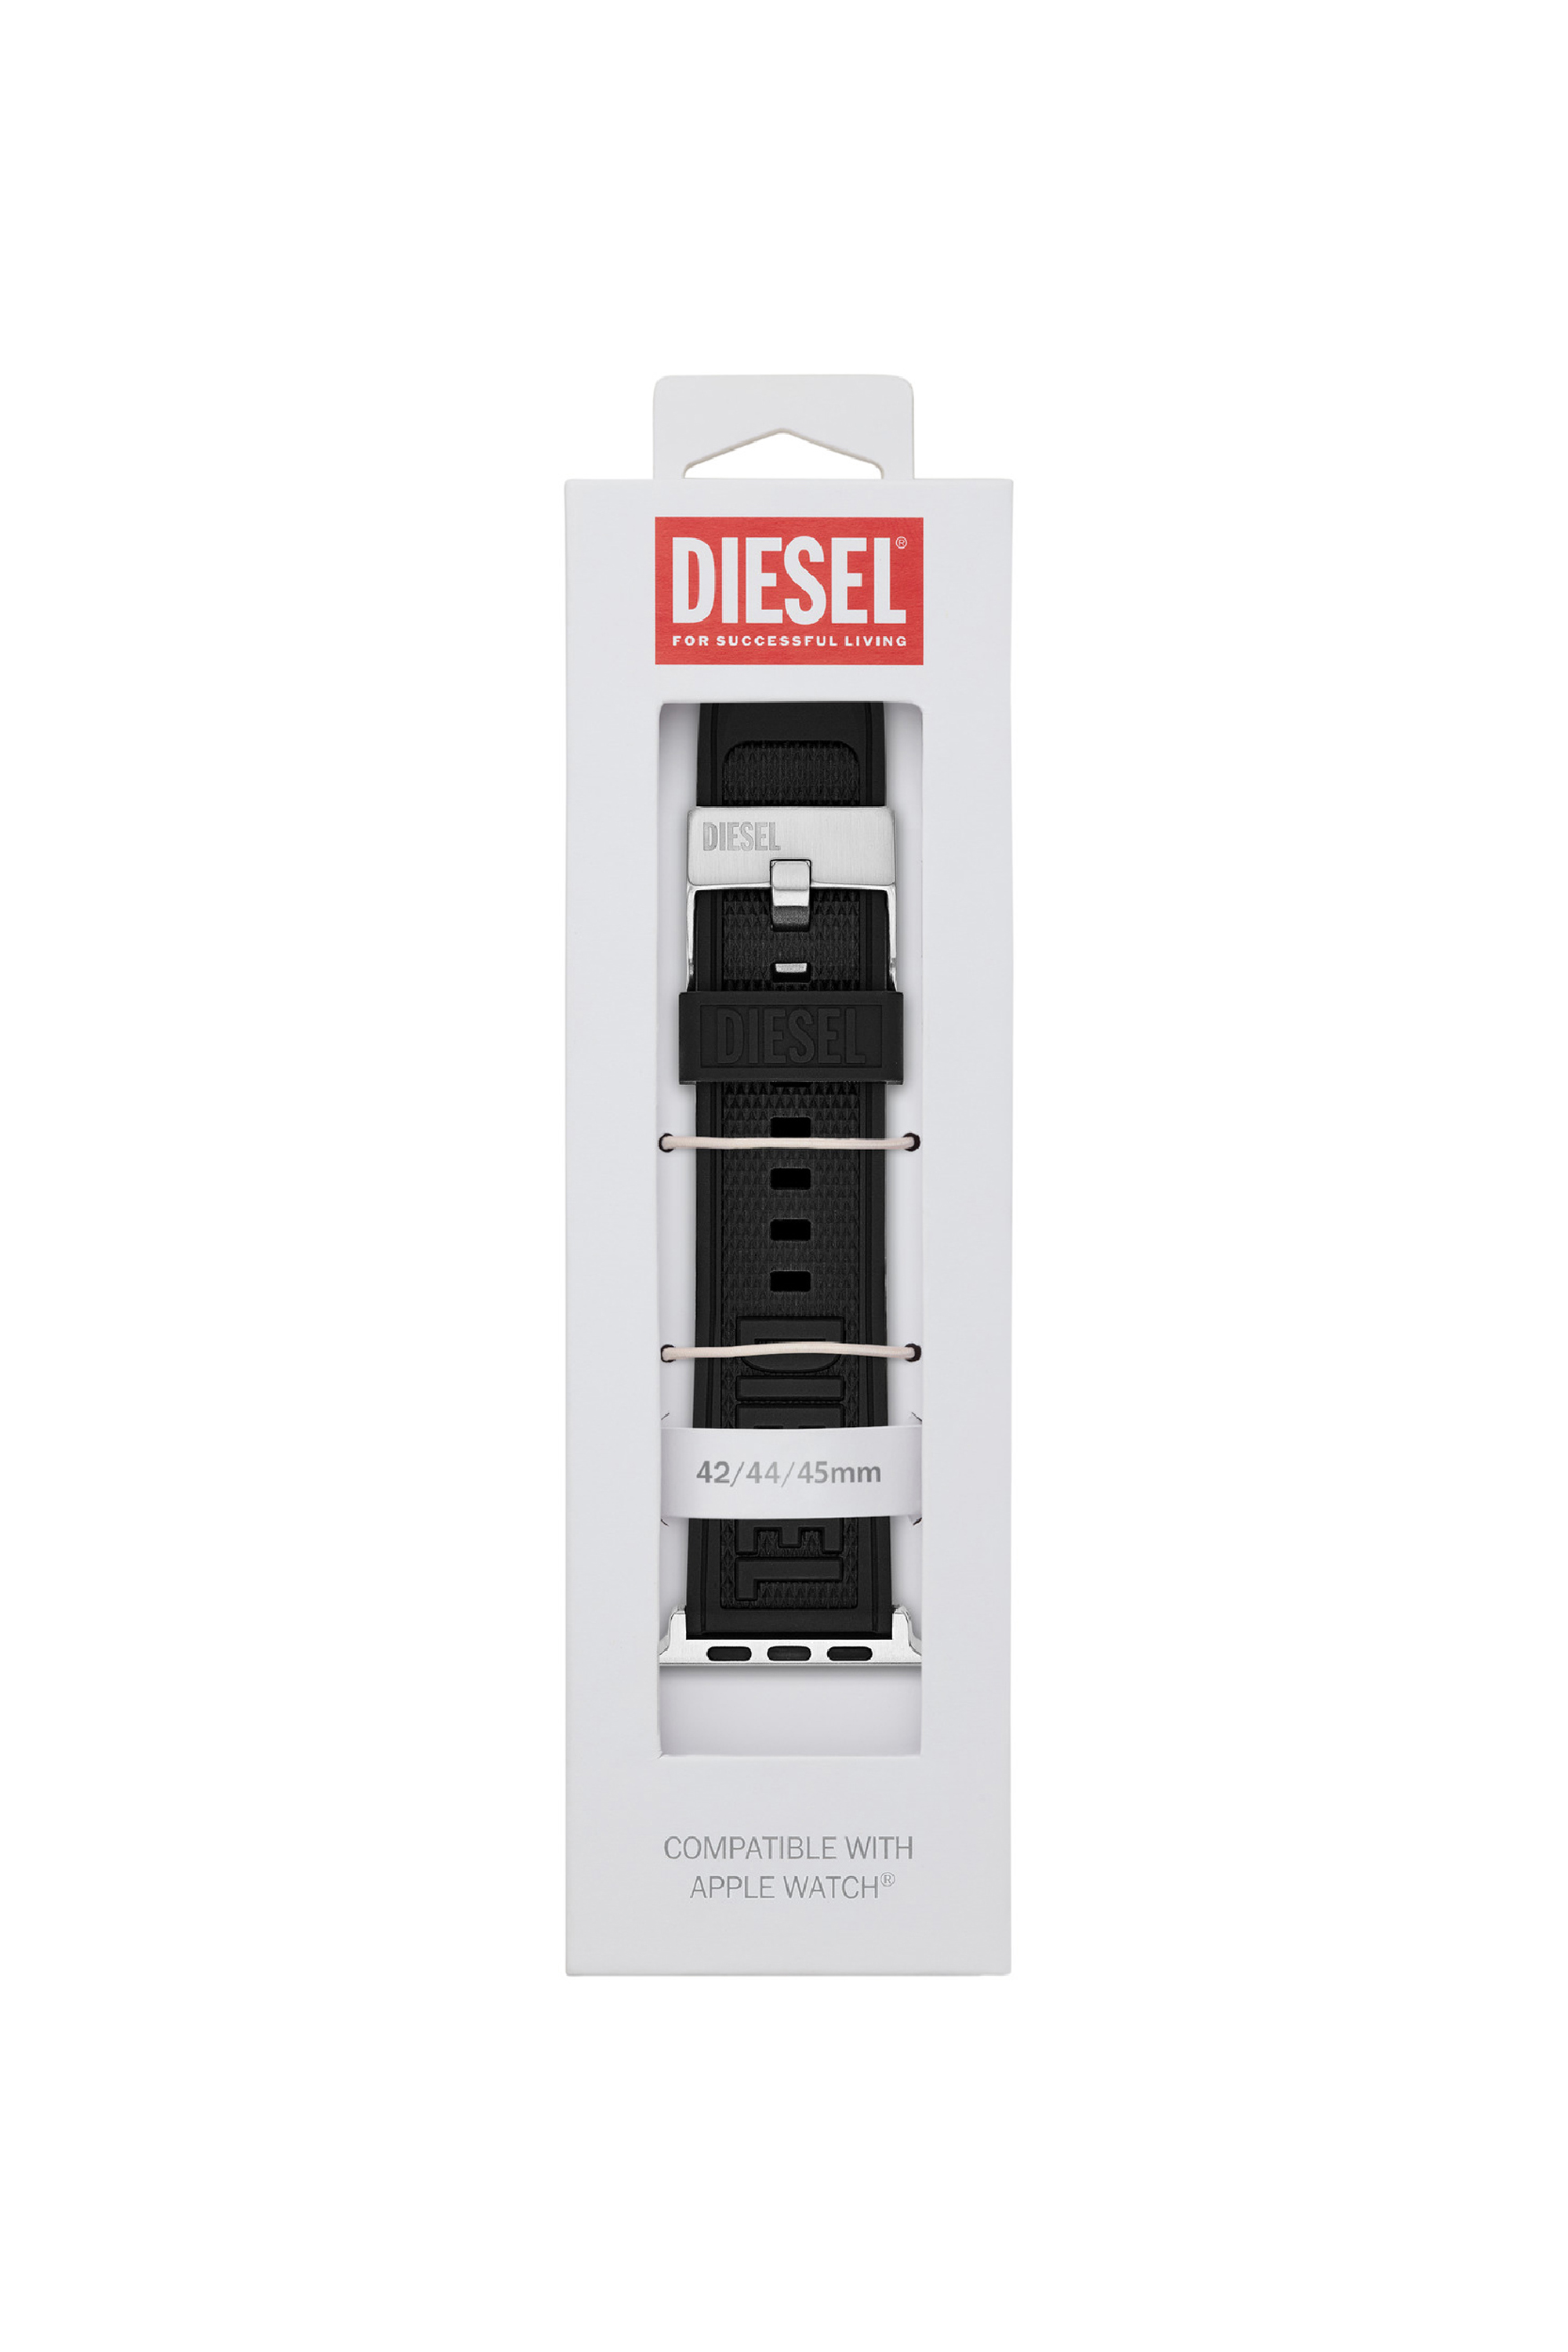 Diesel - DSS0014, Black - Image 2